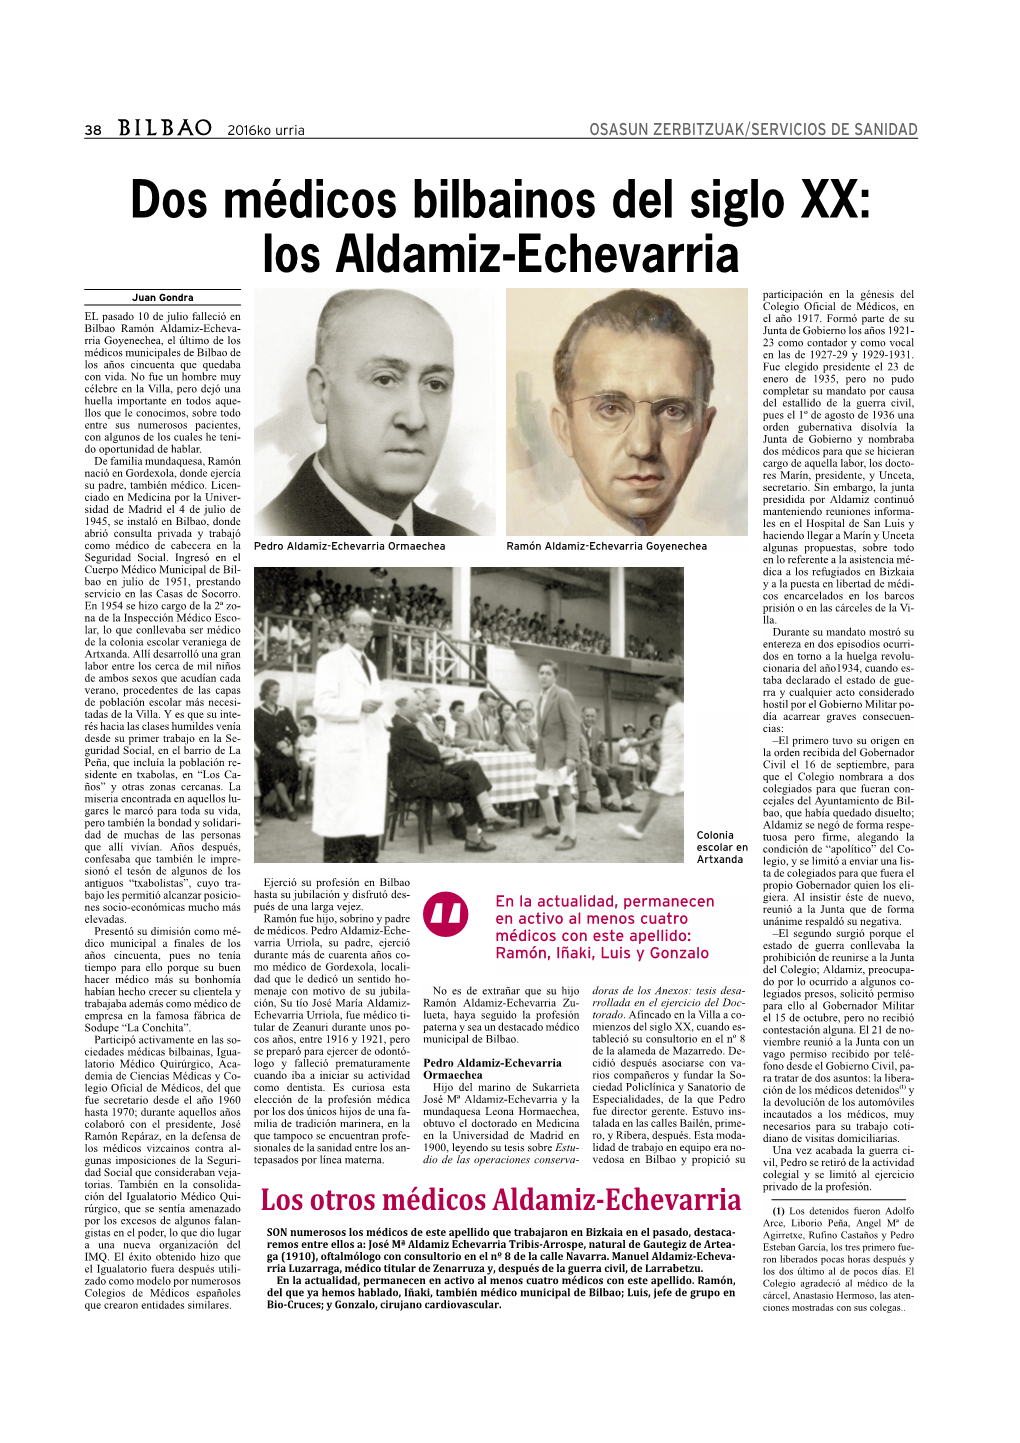 Dos Médicos Bilbainos Del Siglo XX: Los Aldamiz-Echevarria